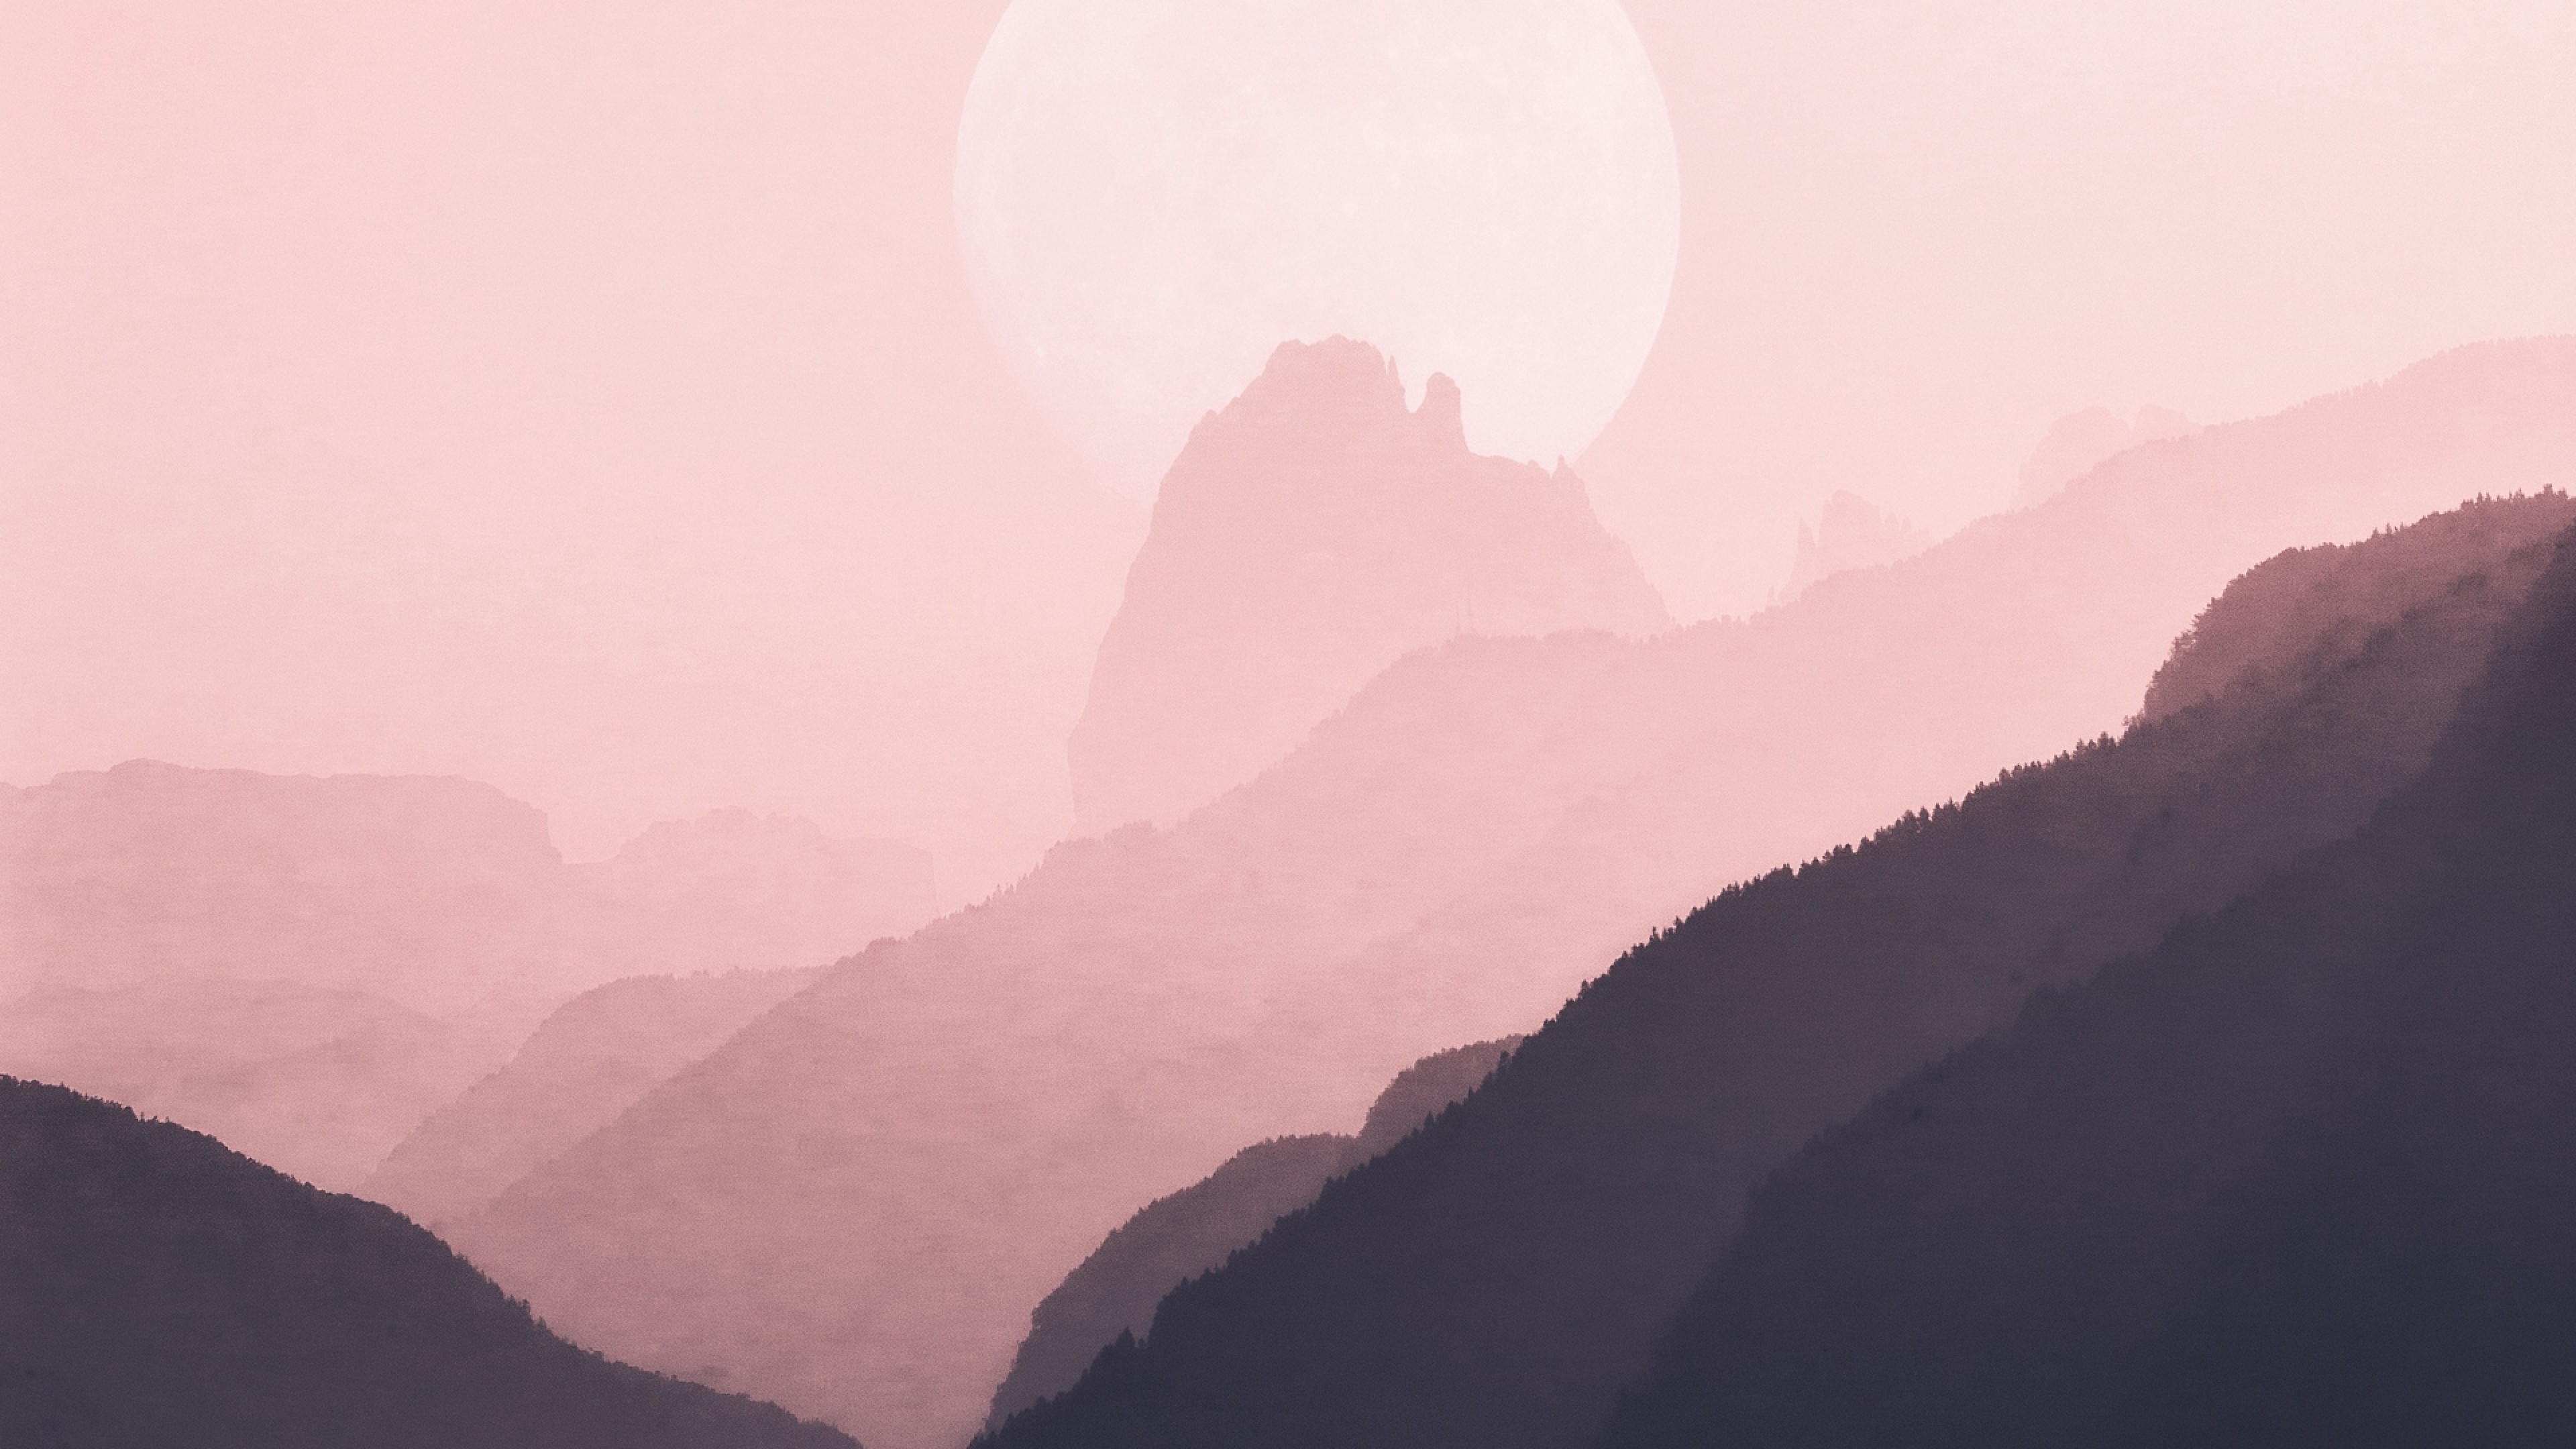 Hay ngắm nhìn những ngọn núi tuyệt đẹp, dưới ánh bình minh mỏng manh, trên bầu trời màu hồng 4K Ultra HD. Bộ sưu tập ảnh này sẽ giúp bạn thư giãn và truyền cảm hứng cho ngày mới, đặc biệt là khi nhìn thấy màn hình hiển thị được cảnh đẹp này với độ phân giải siêu sắc nét.